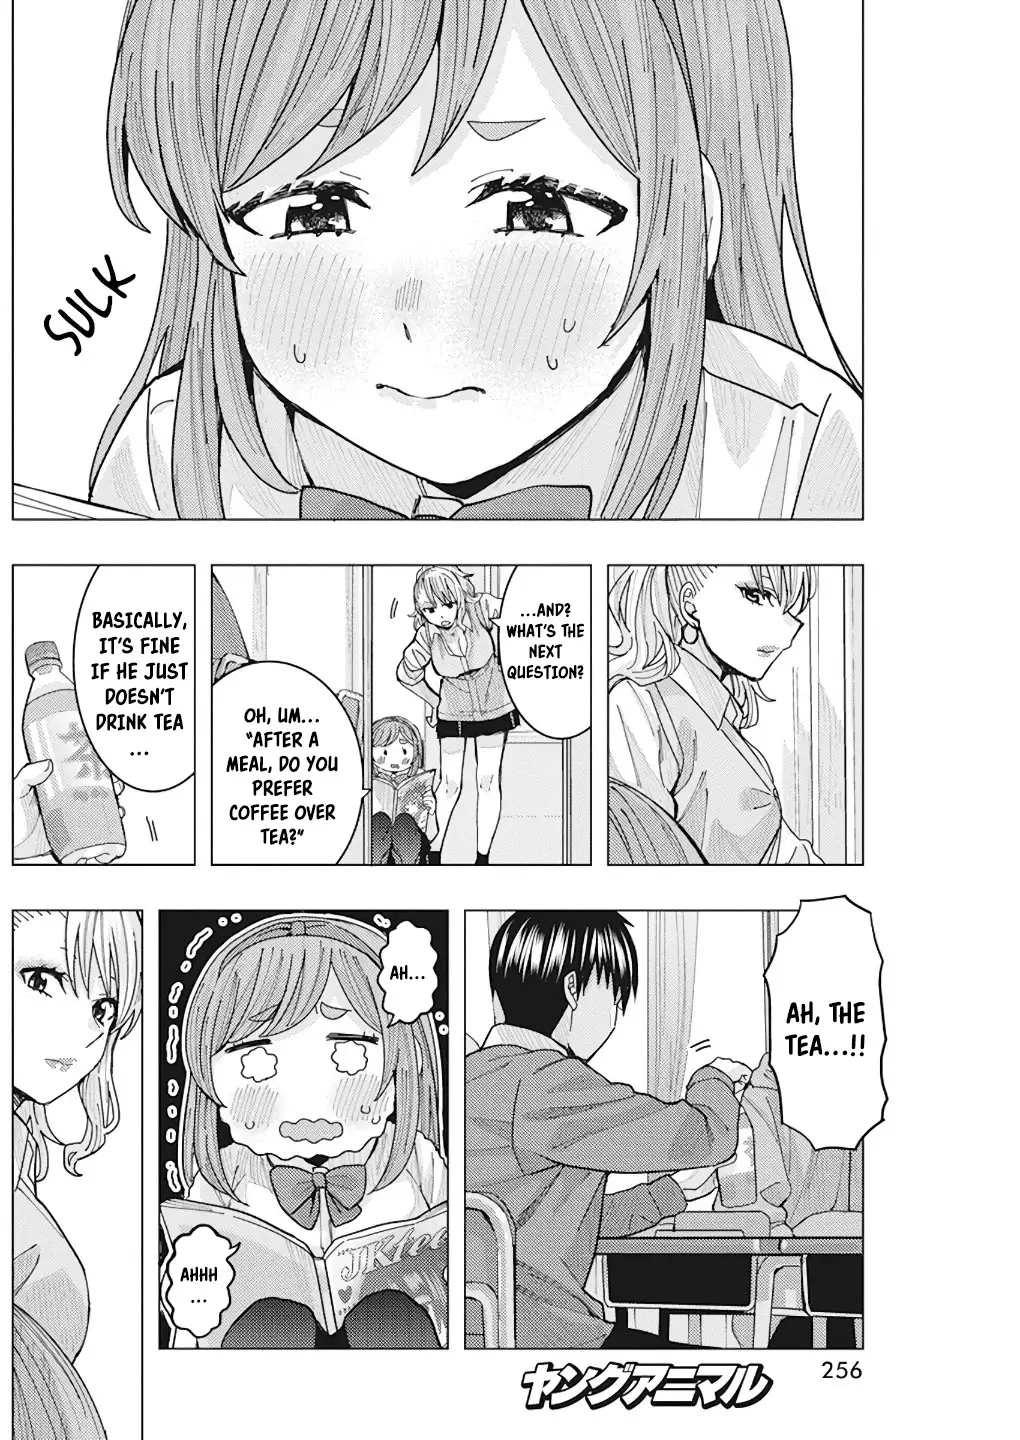 "nobukuni-San" Does She Like Me? - 14 page 12-9bafc844